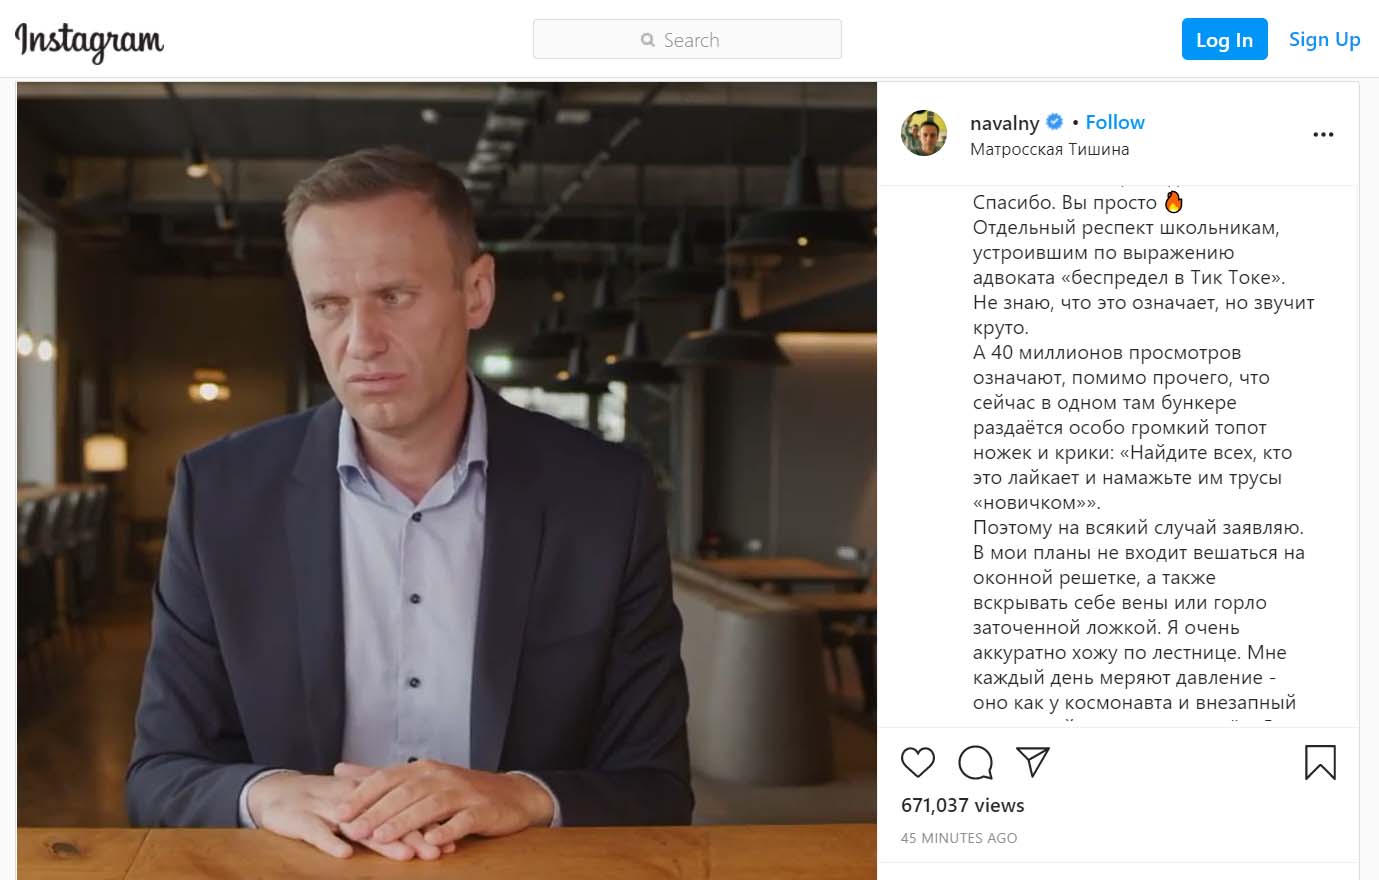 «В мои планы не входит вешаться, а также вскрывать себе вены или горло»: обращение Навального из СИЗО